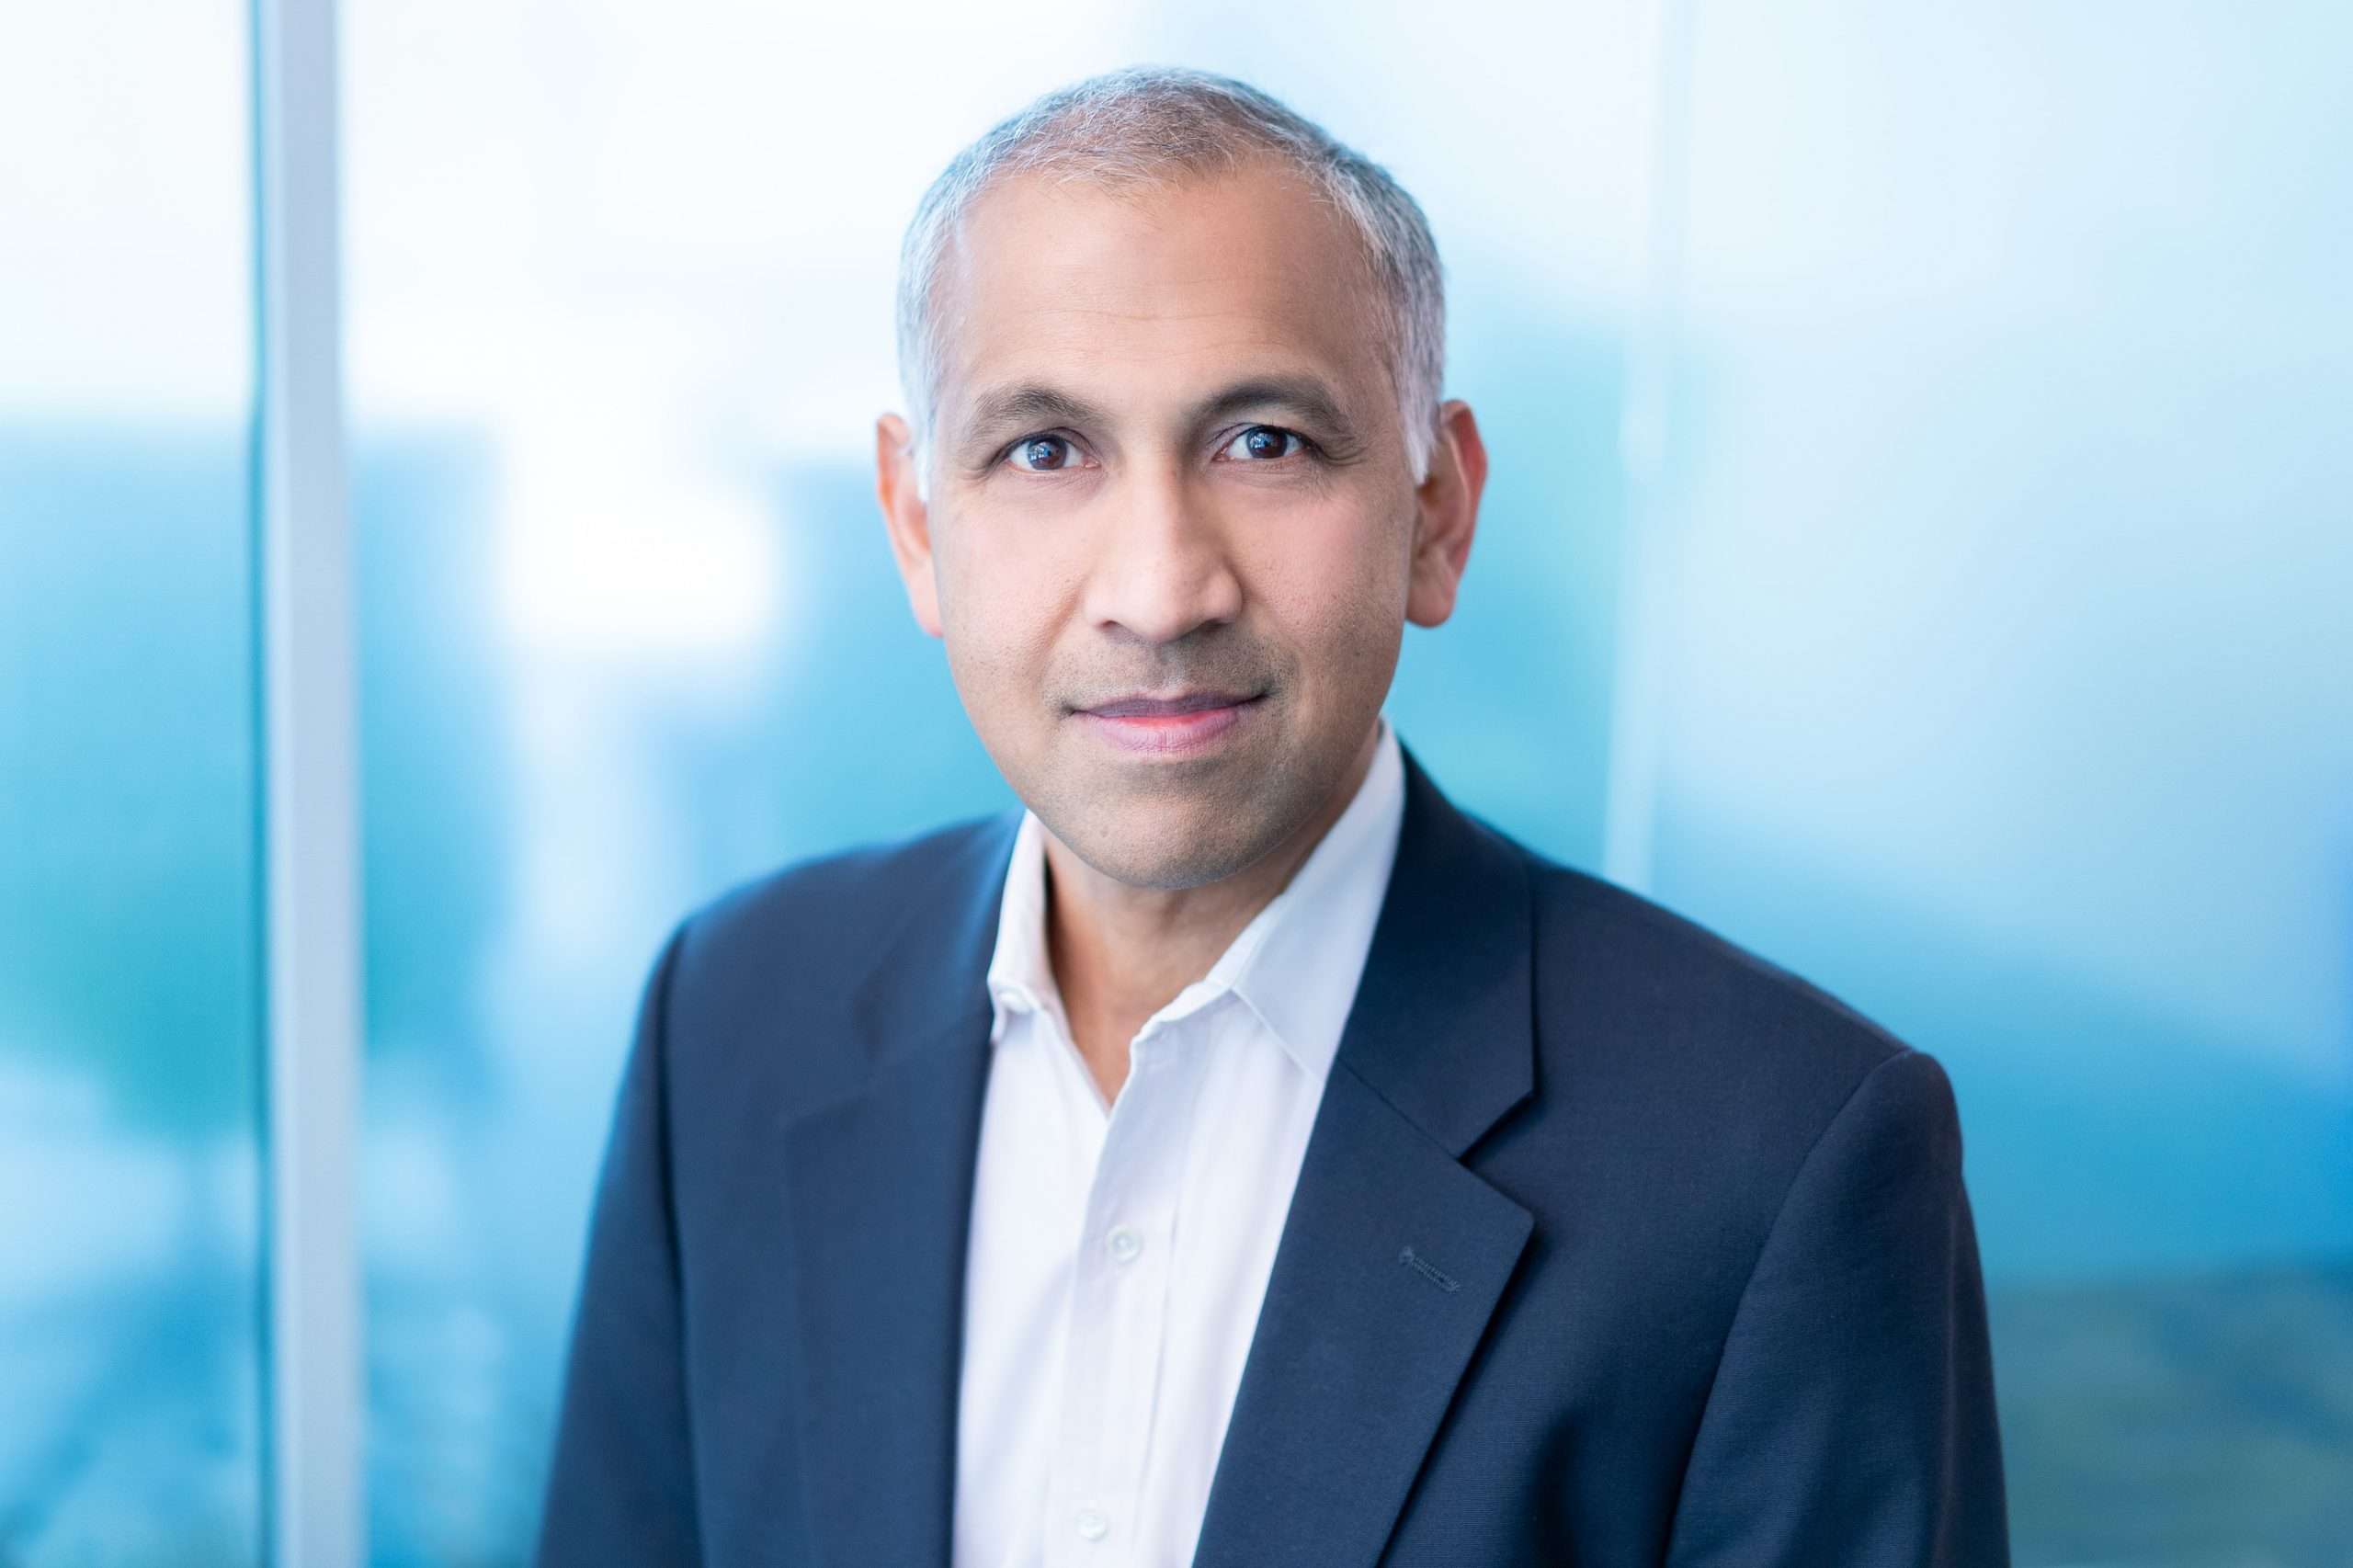 Rajiv Ramaswami, CEO de Nutanix, pavimenta el camino hacia la rentabilidad con una oferta consolidada de servicios